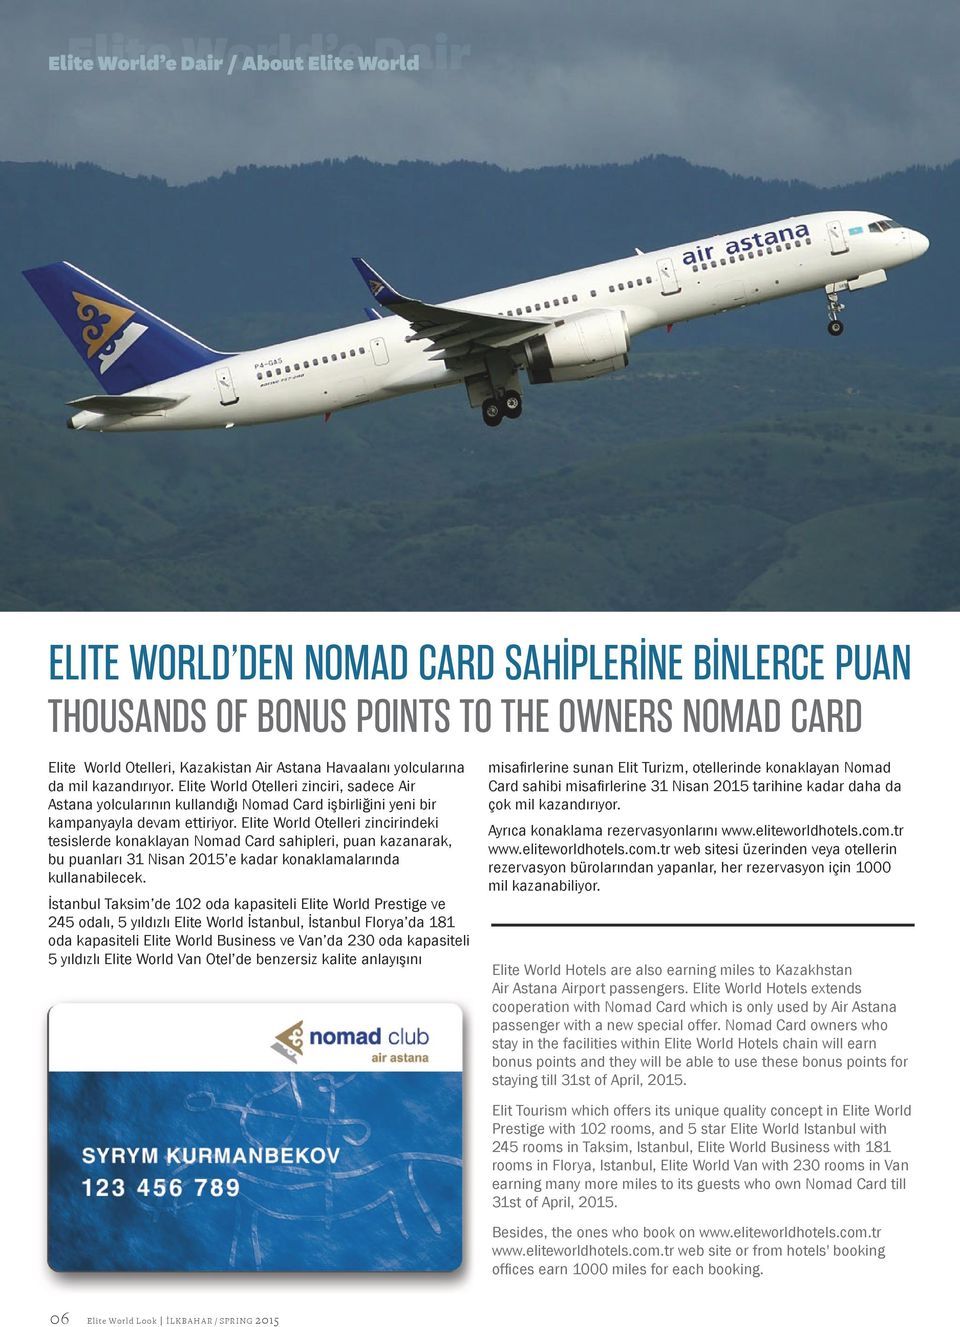 Elite World Otelleri zincirindeki tesislerde konaklayan Nomad Card sahipleri, puan kazanarak, bu puanları 31 Nisan 2015 e kadar konaklamalarında kullanabilecek.